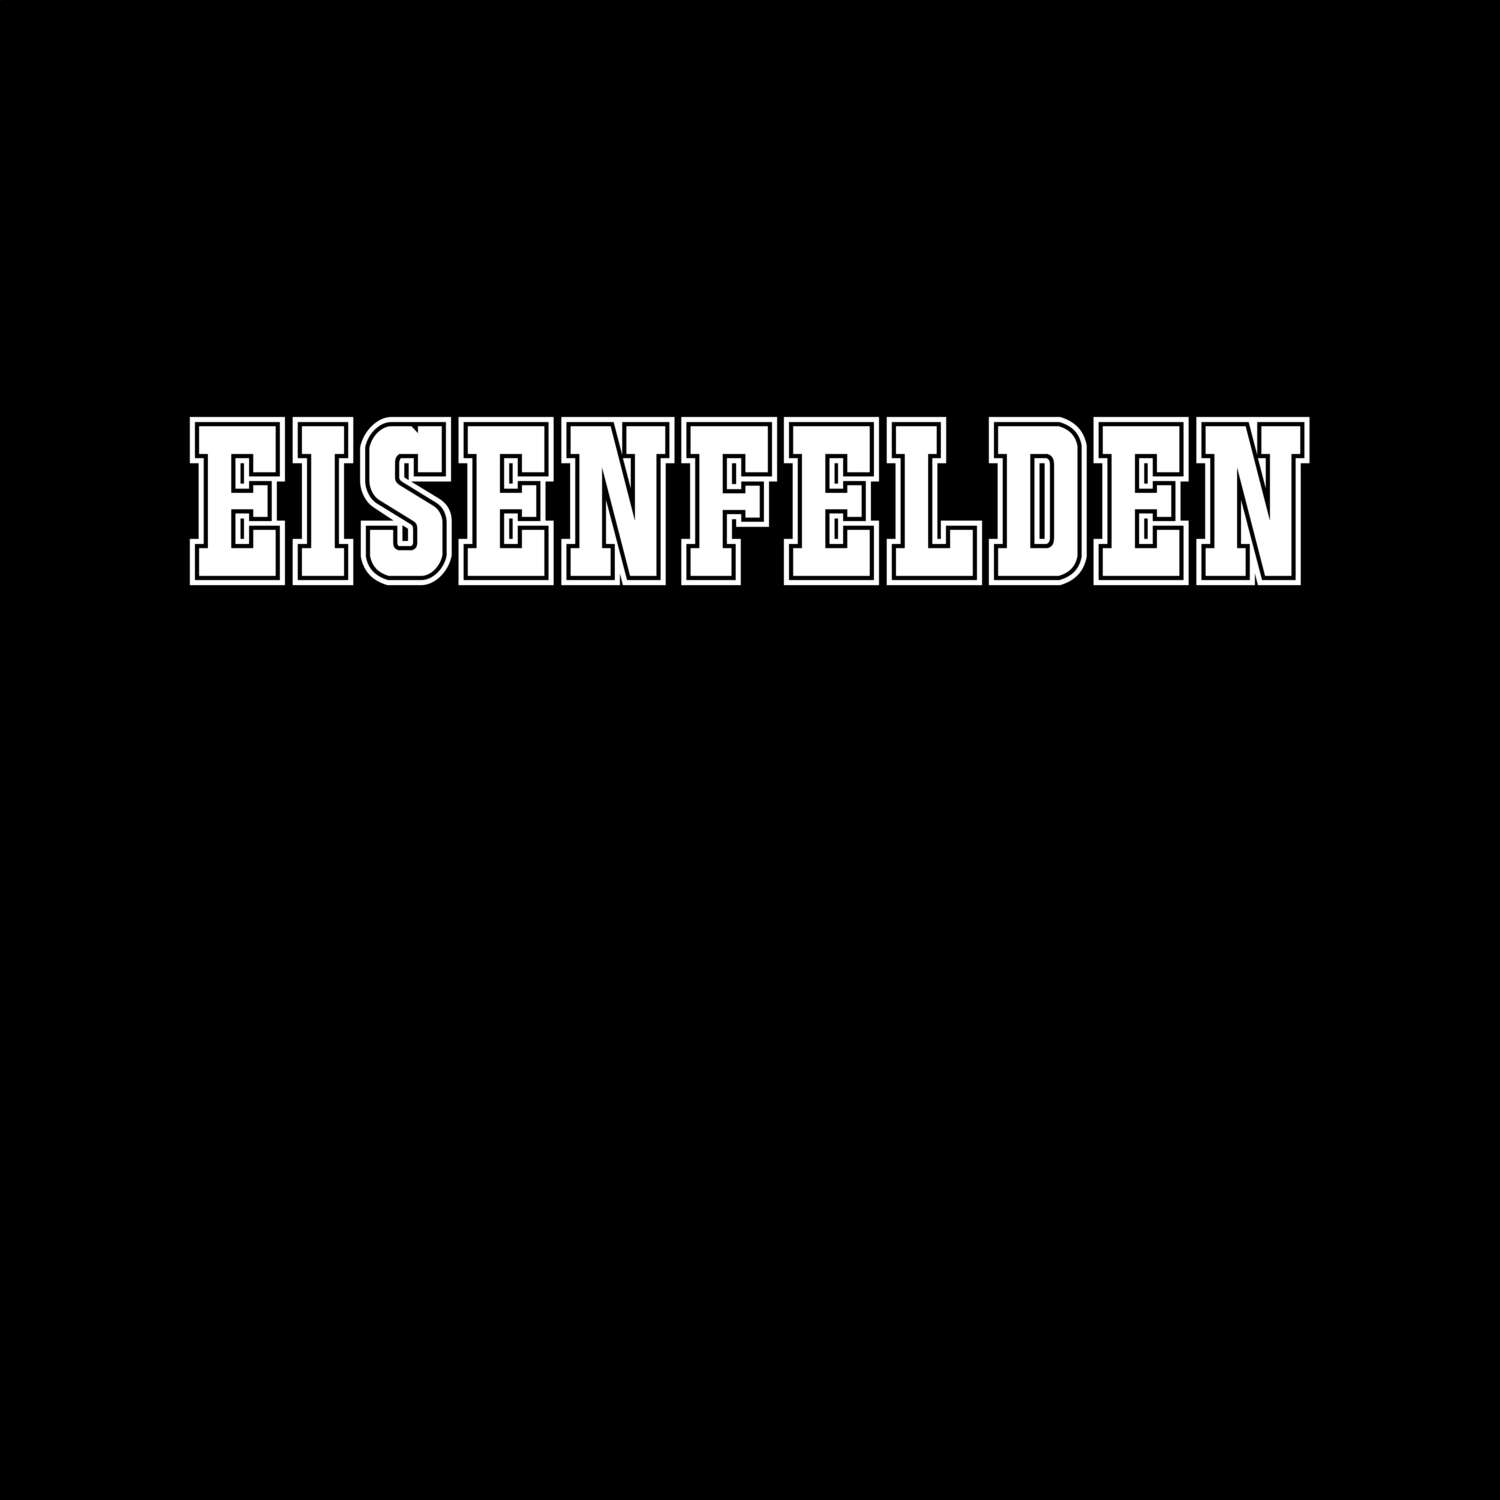 Eisenfelden T-Shirt »Classic«